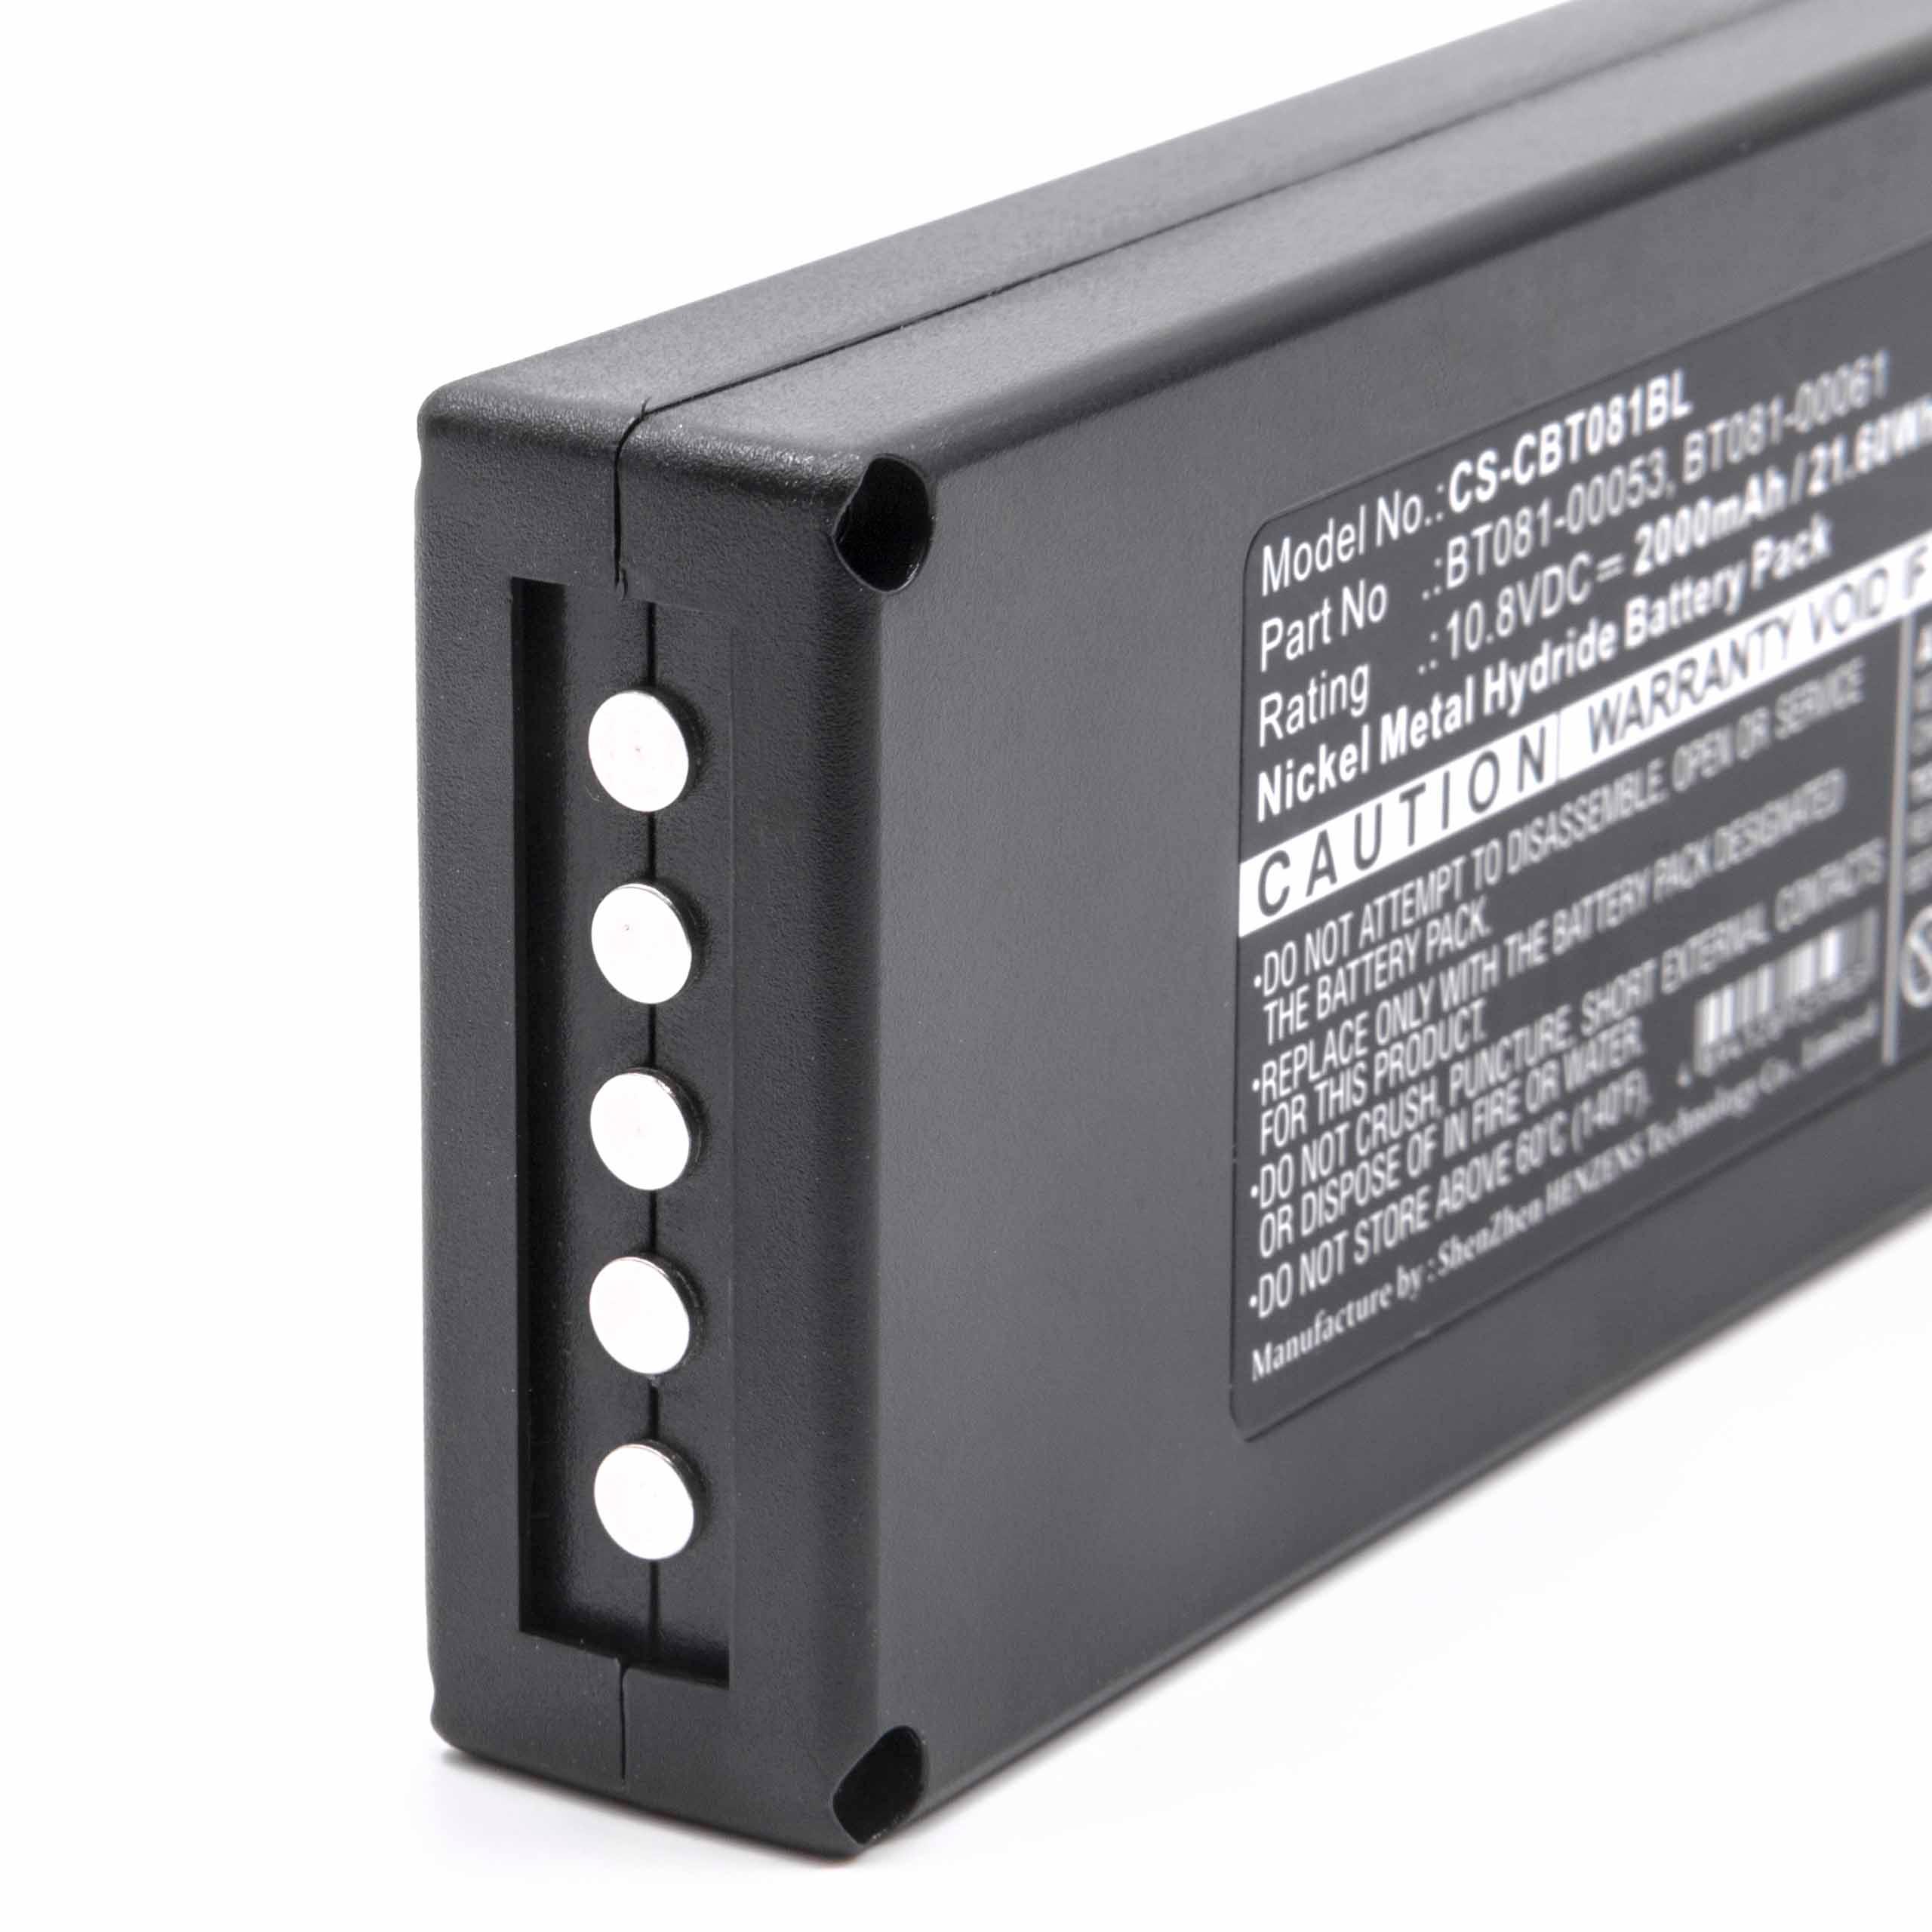 Batterie remplace Cattron-Theimeg BT081-00053, B5018-00061 pour télécommande - 2000mAh 10,8V NiMH